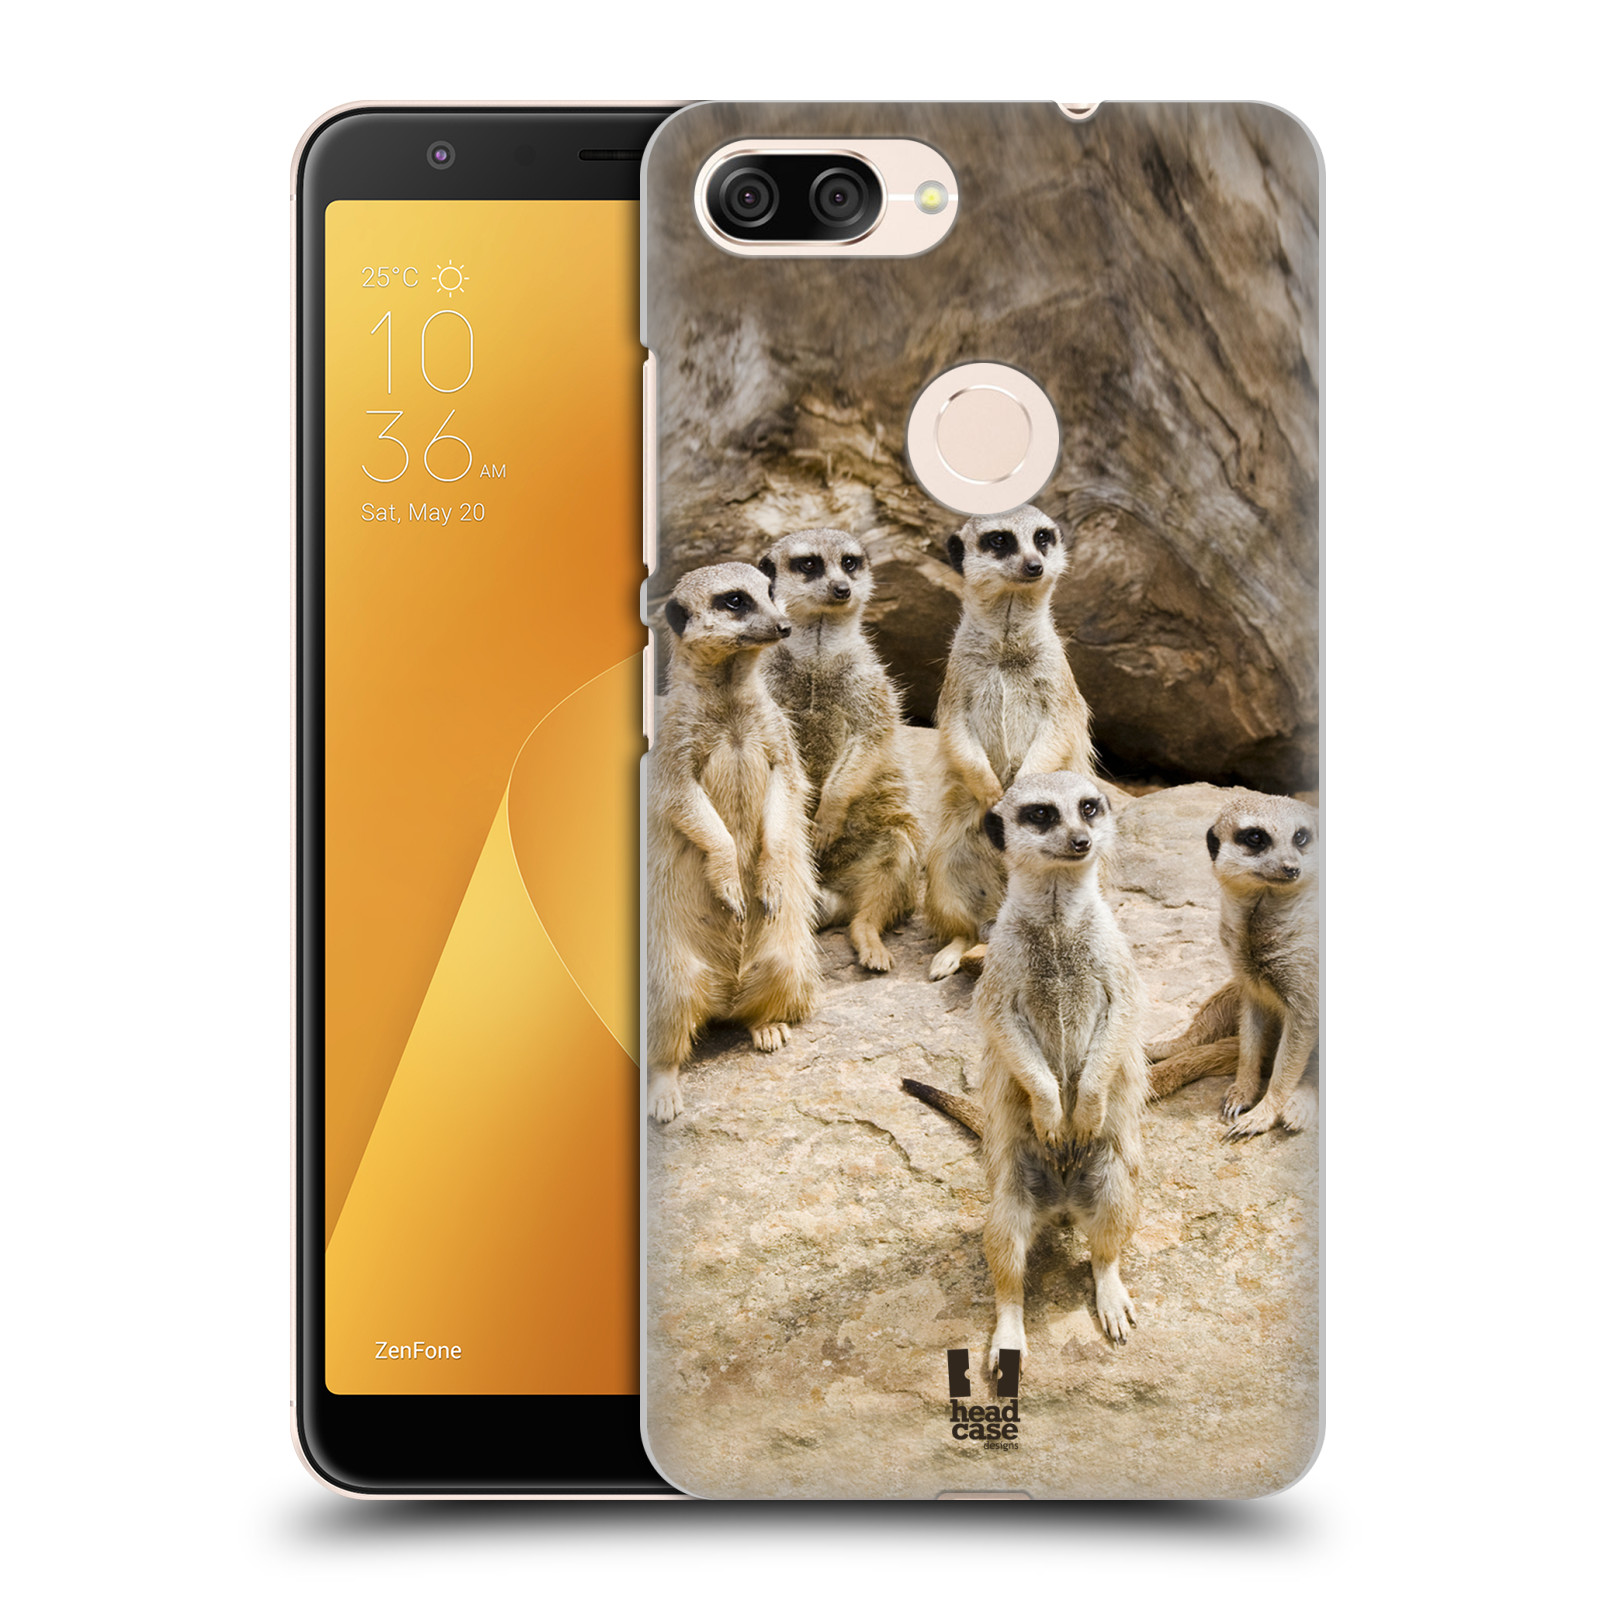 Zadní obal pro mobil Asus Zenfone Max Plus (M1) - HEAD CASE - Svět zvířat roztomilé surikaty